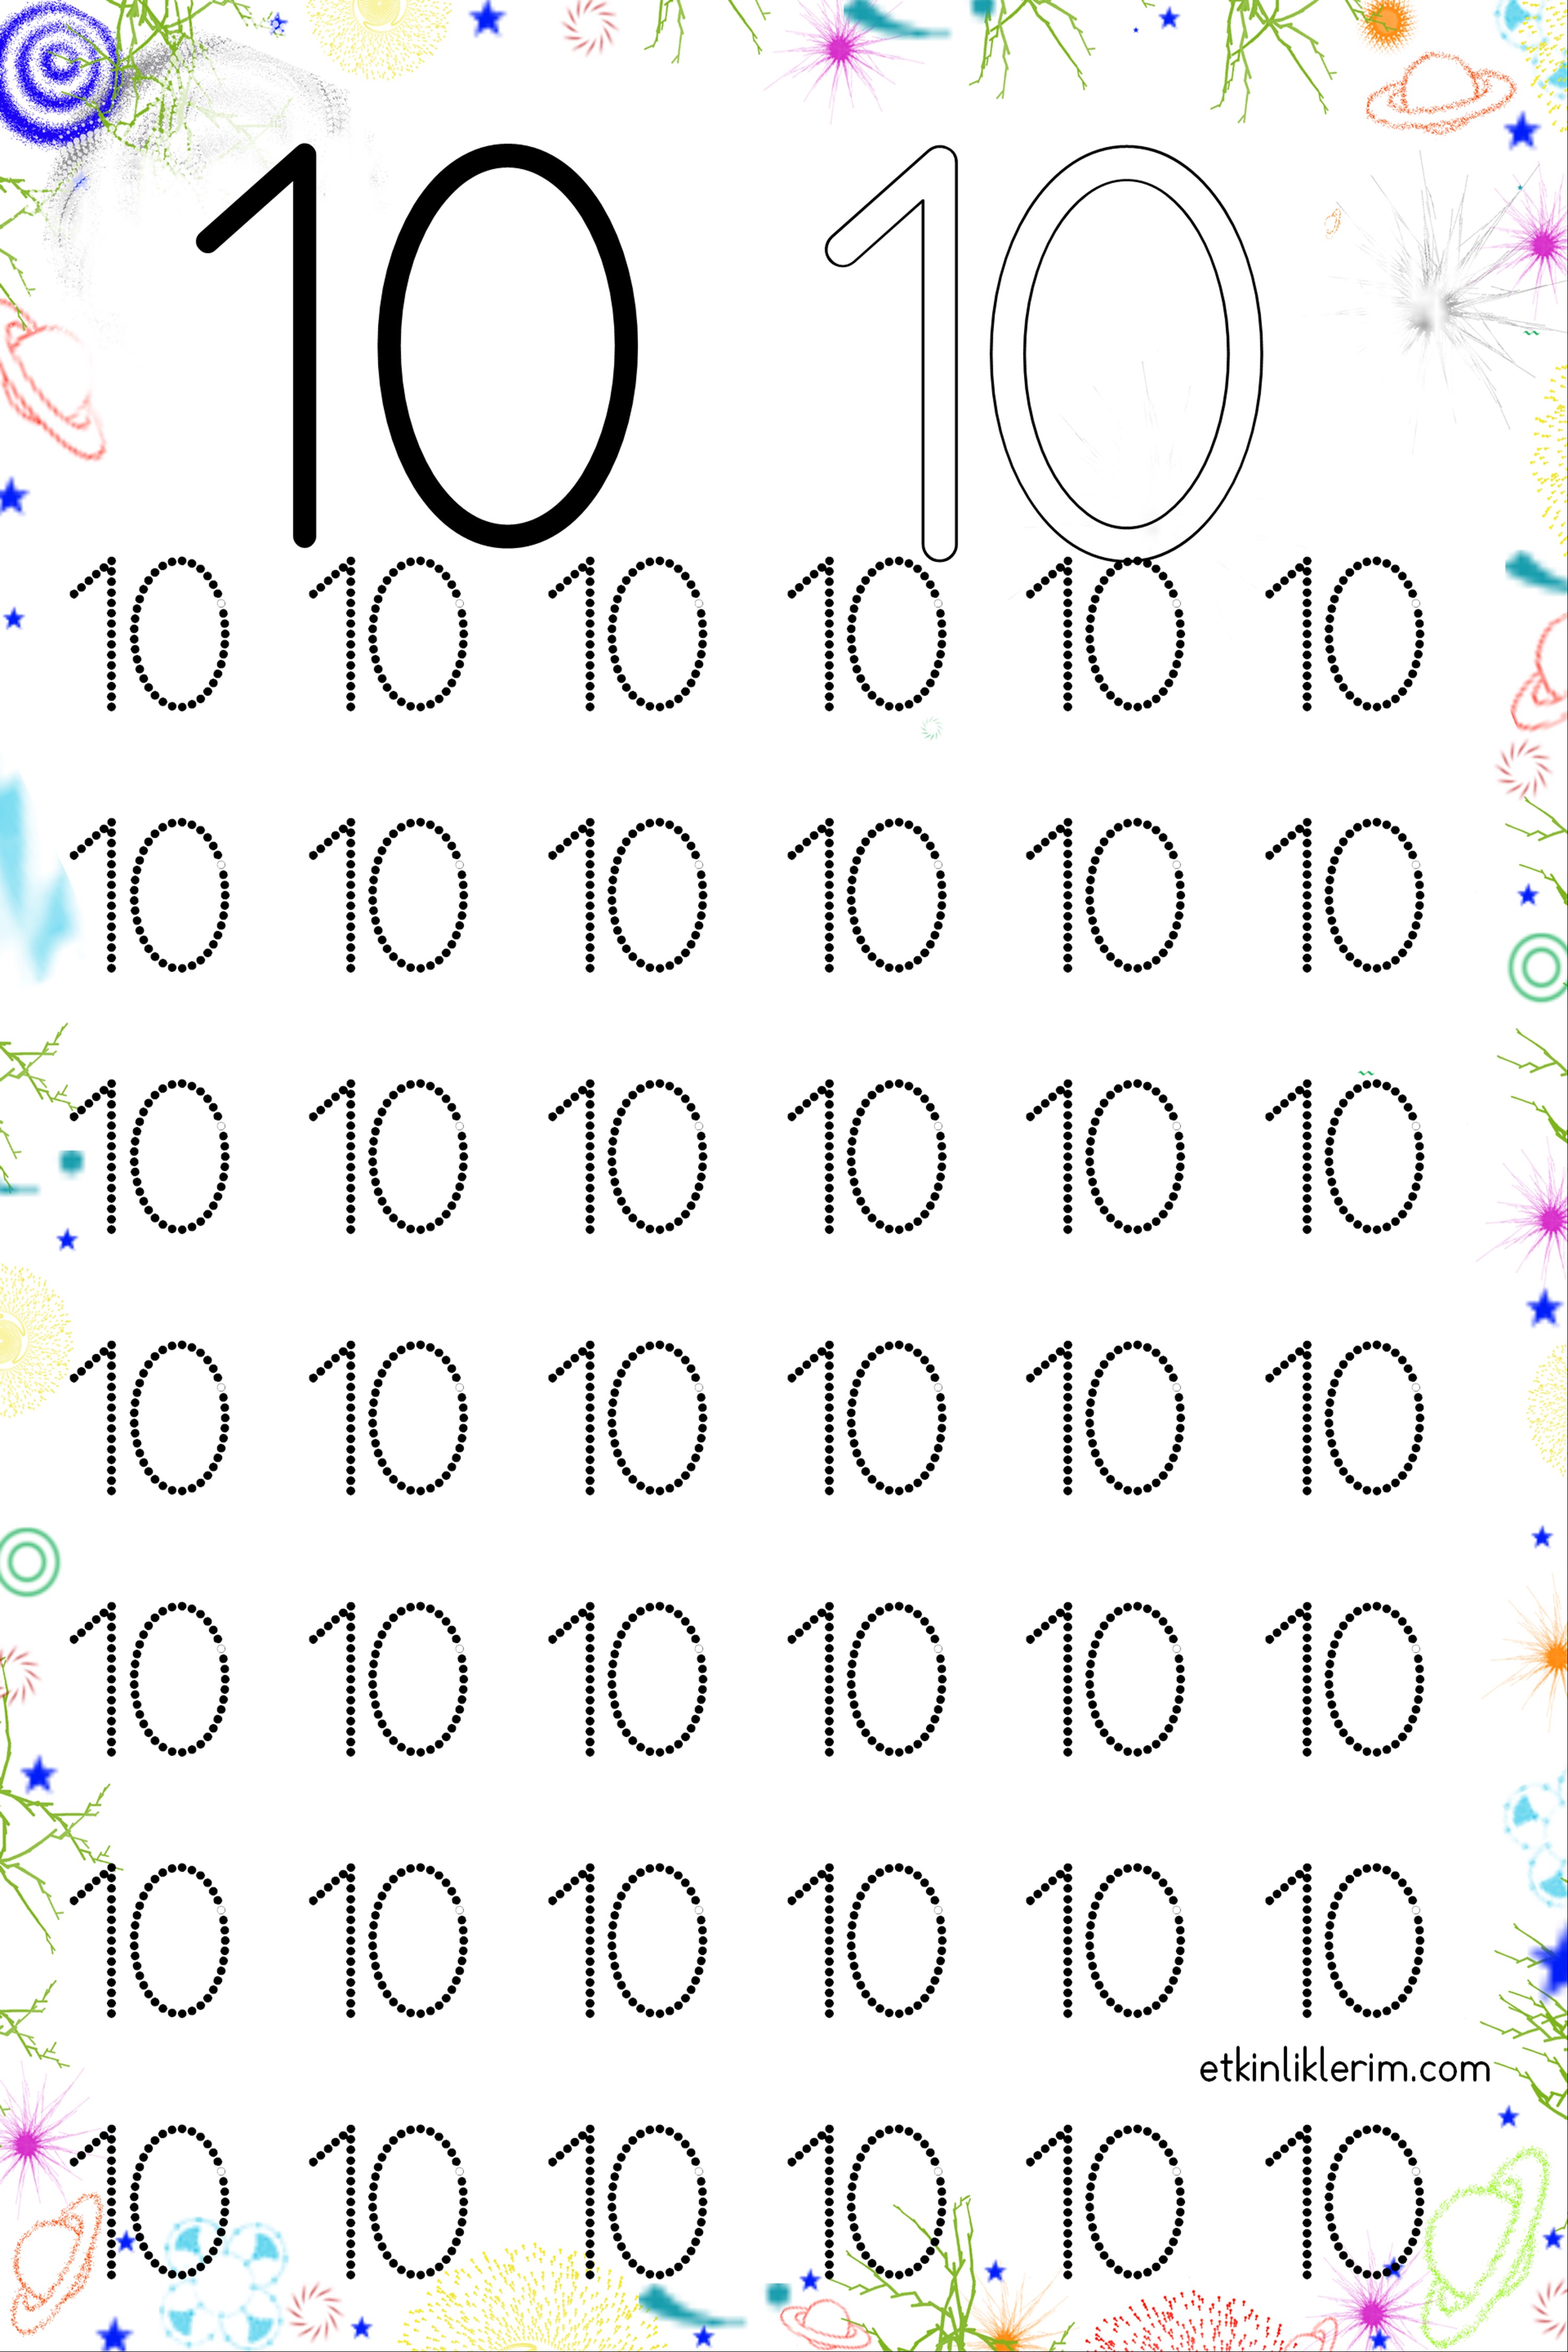 10 rakamı basit çizgi çalışması sayılar ana sınıfı etkinliği